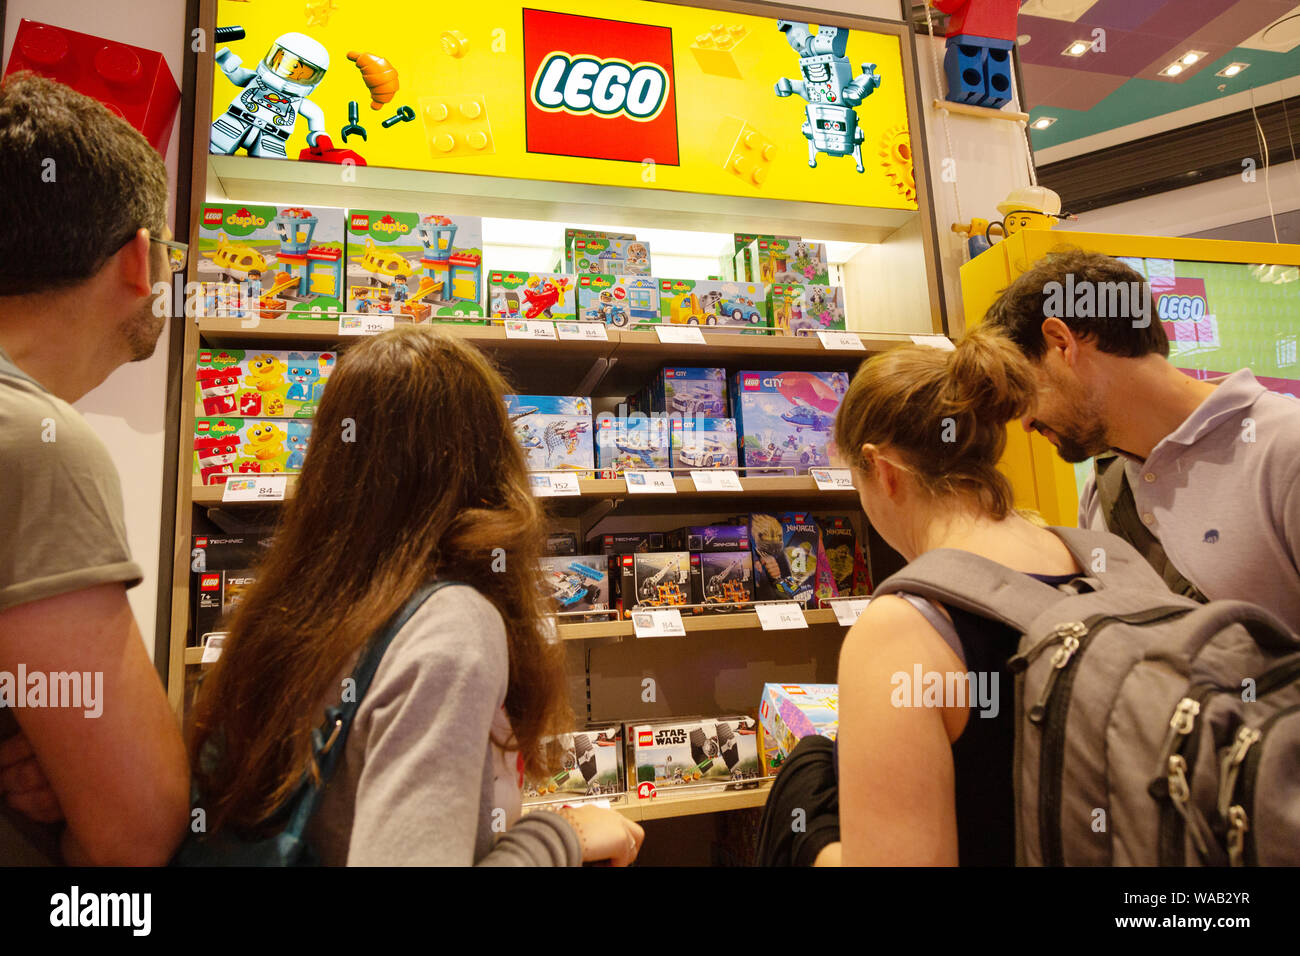 Danemark - Lego lego les gens d'acheter à un magasin de lego, l'aéroport de Copenhague, Copenhague, Danemark, Scandinavie Banque D'Images